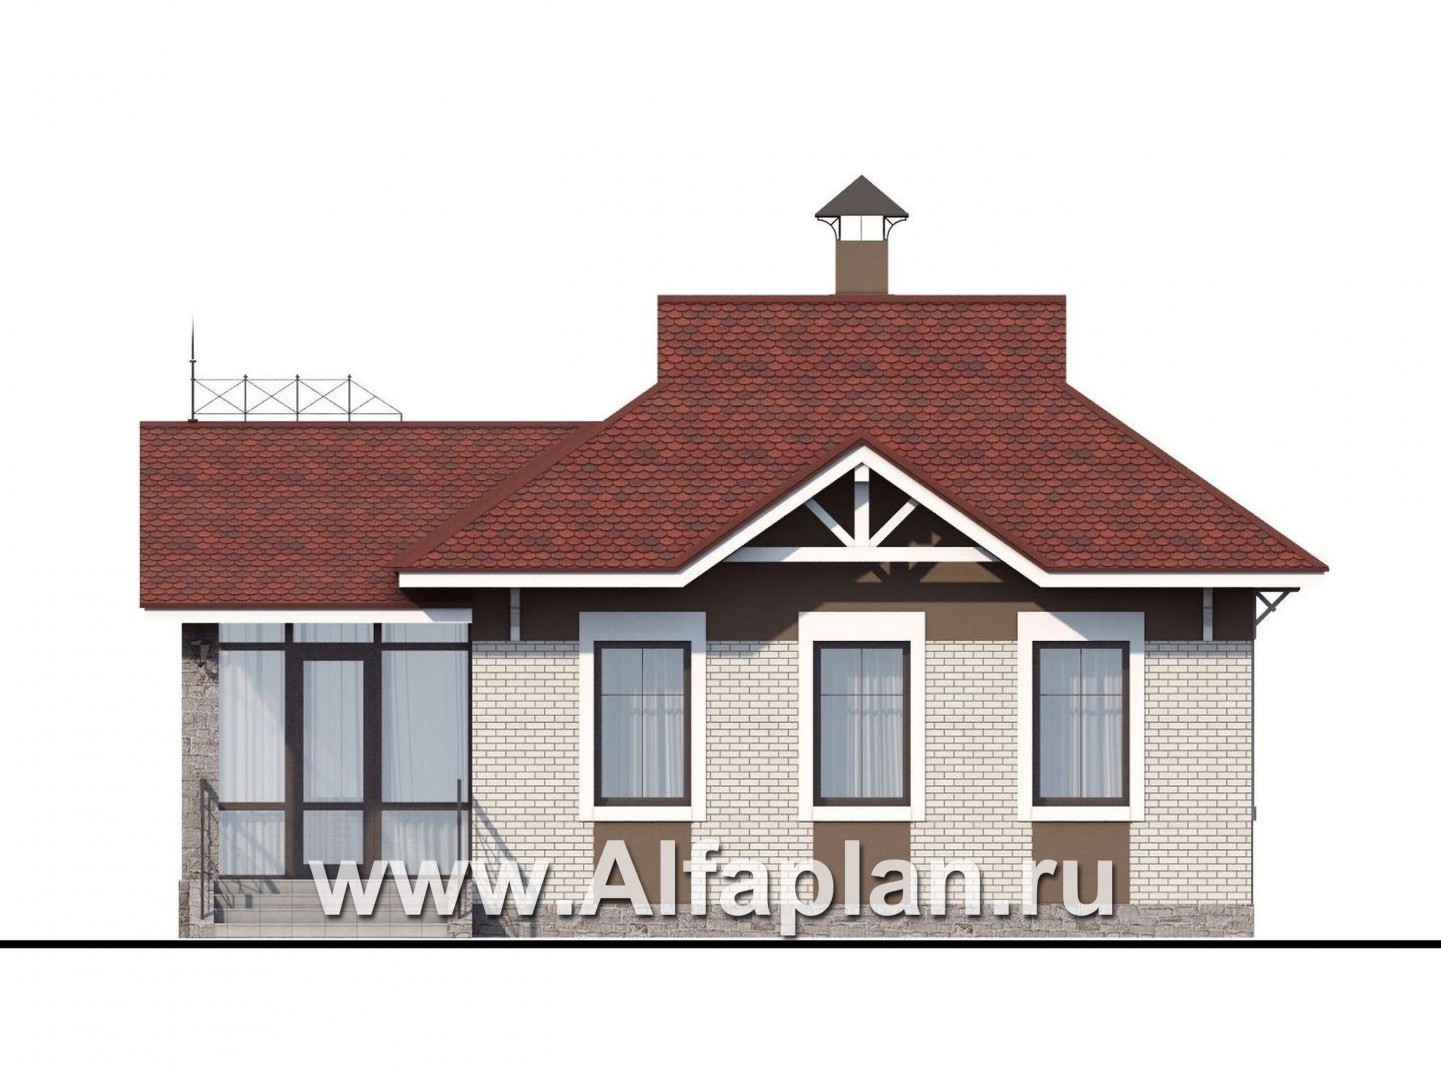 Проект гостевого дома, из кирпича, одна спальня, в русском стиле - фасад дома